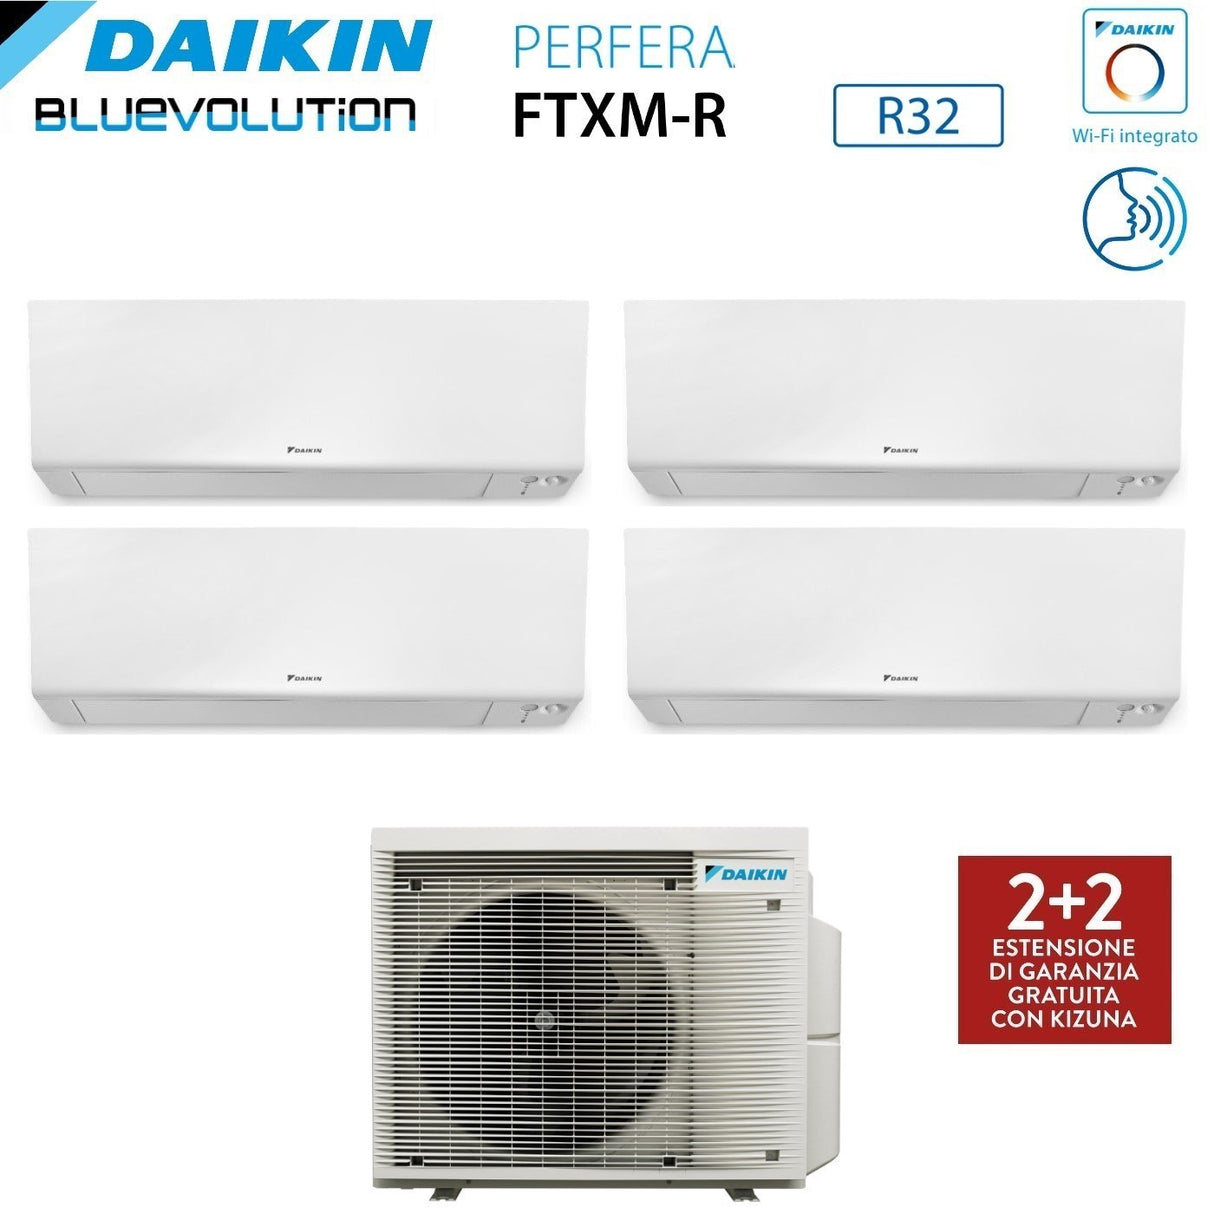 immagine-2-daikin-climatizzatore-condizionatore-daikin-bluevolution-quadri-split-inverter-serie-ftxmr-perfera-wall-791212-con-4mxm80a-r-32-wi-fi-integrato-700090001200012000-garanzia-italiana